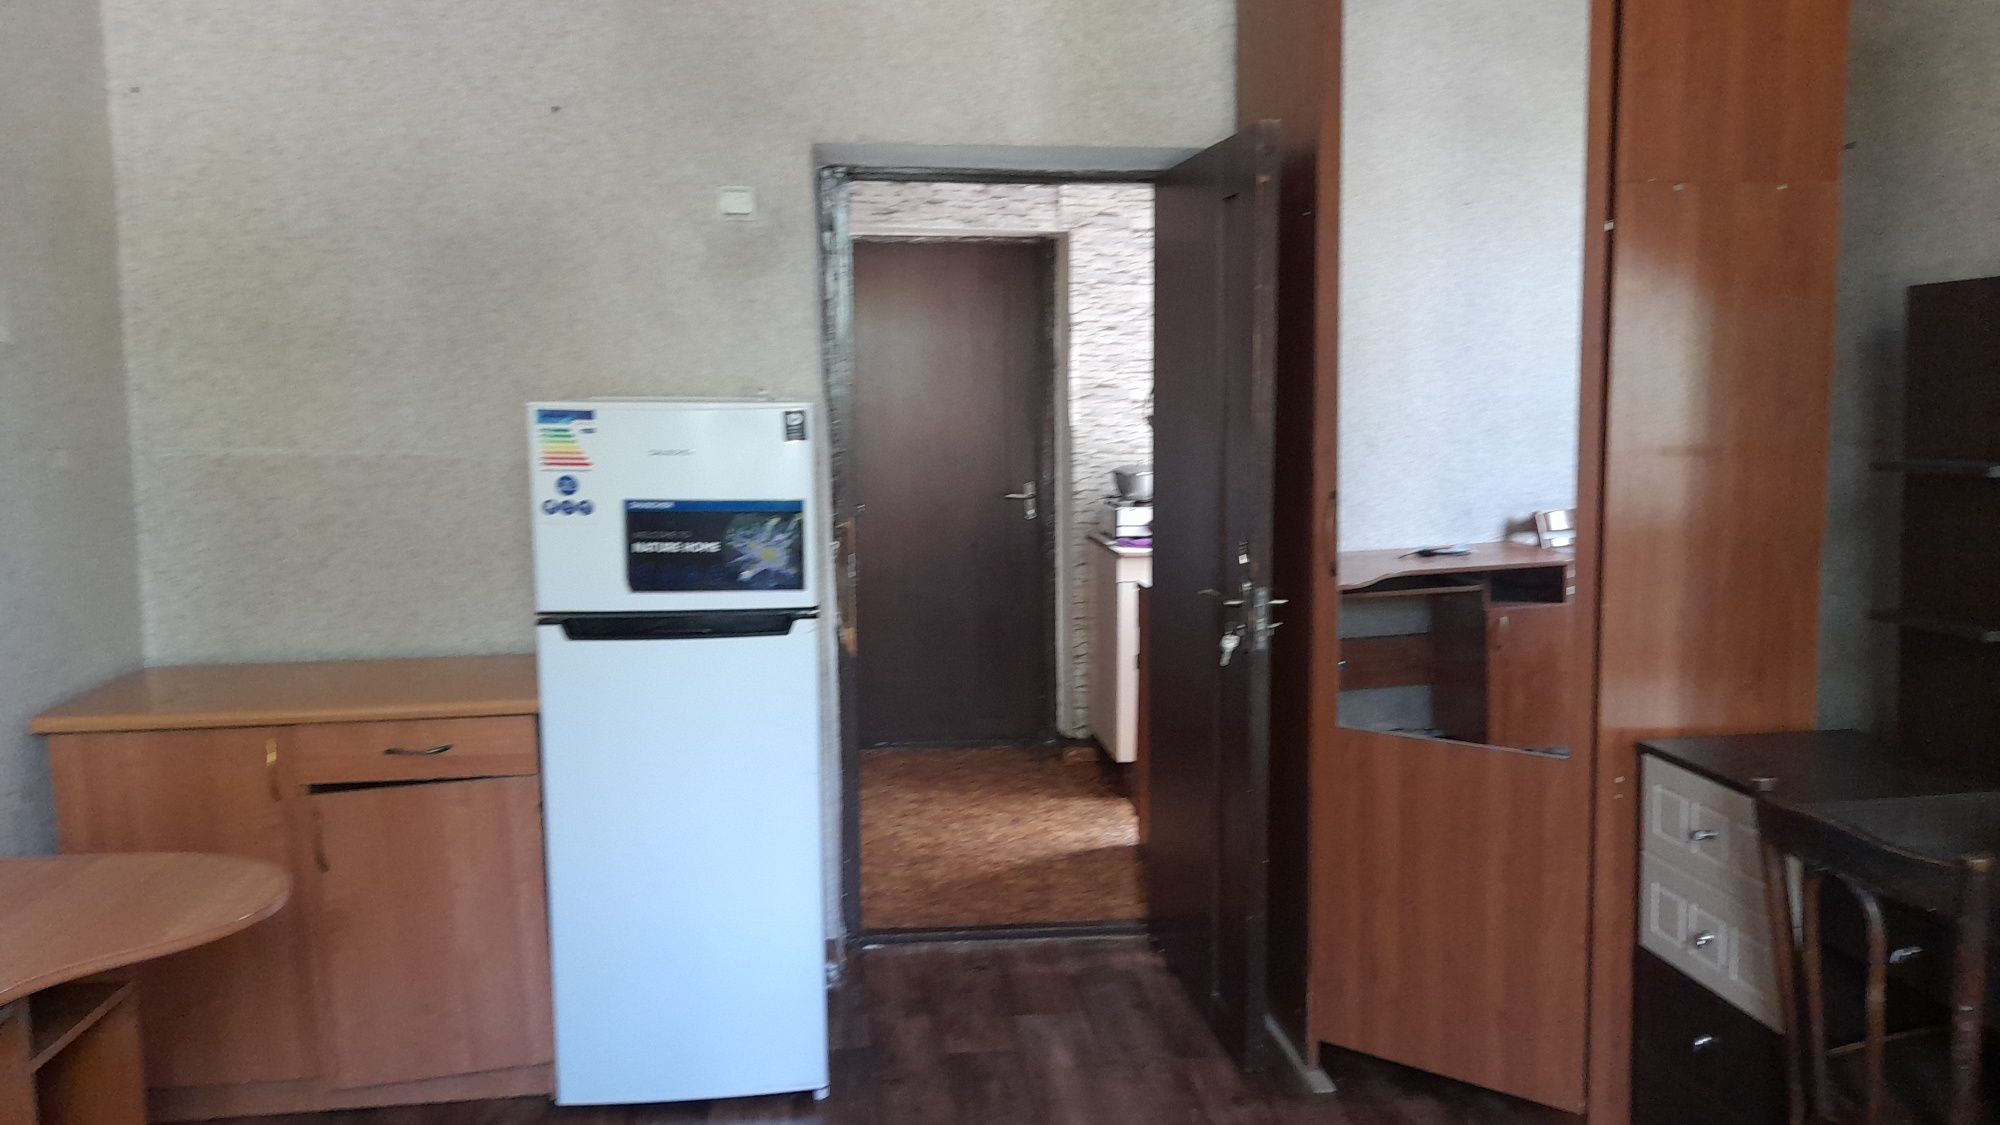 Продам в Алматы 2 комнатную приватизирована обшежитие,читать вниматель